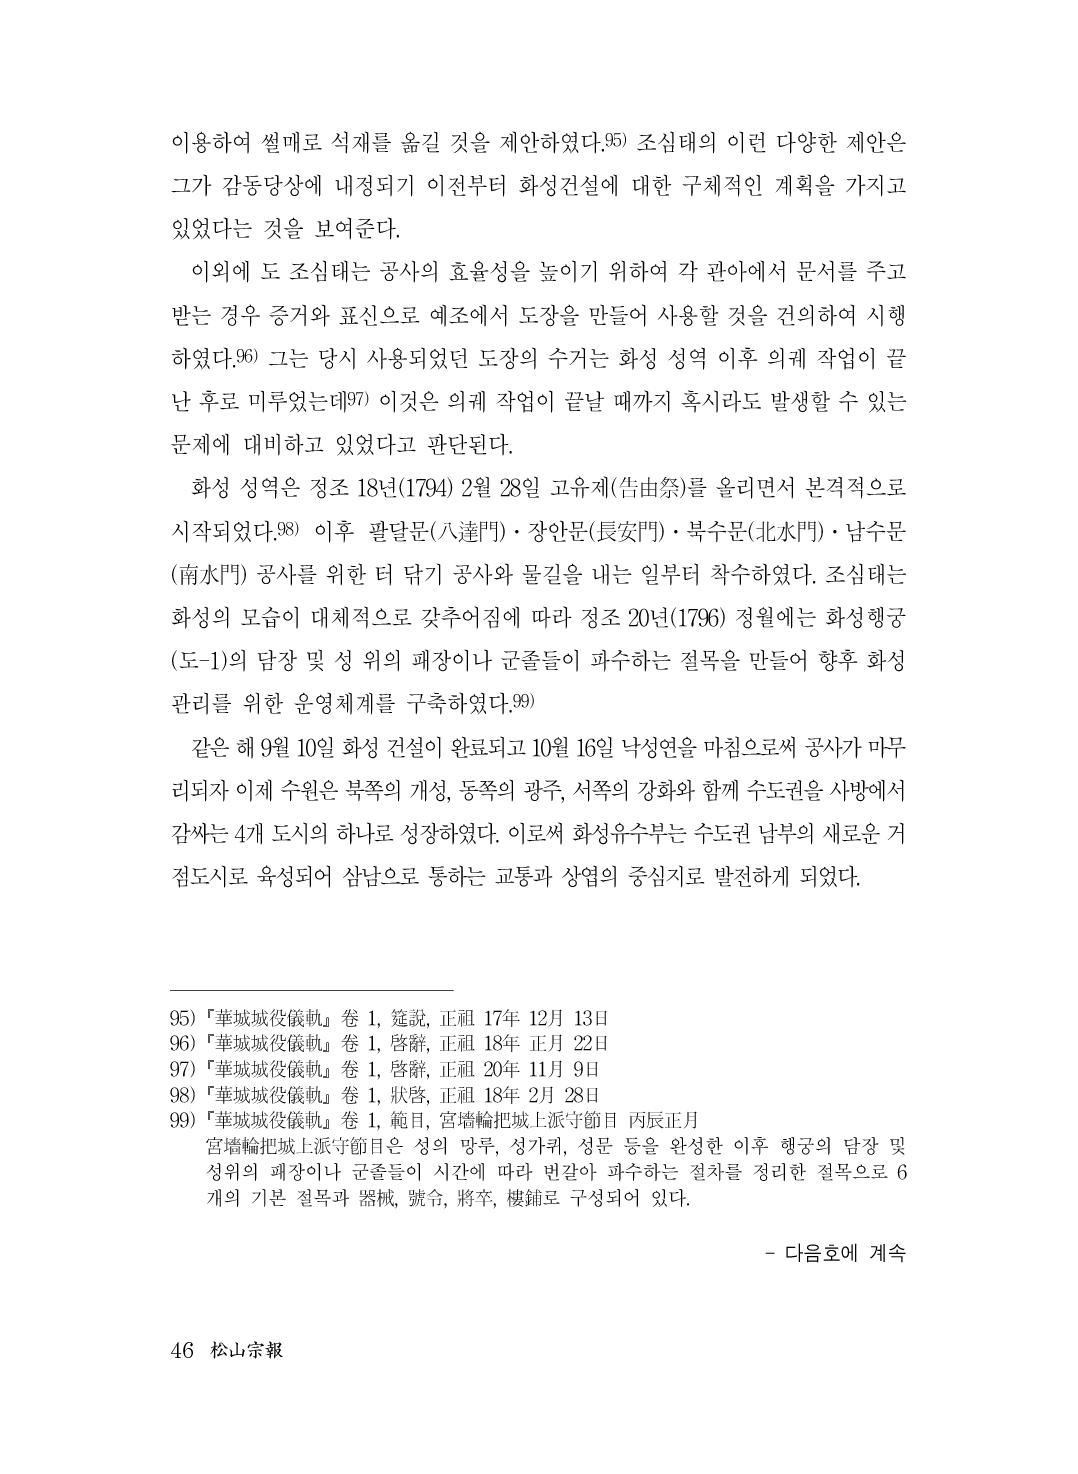 (전체) 송산종보(27호)(최종)_47.jpg